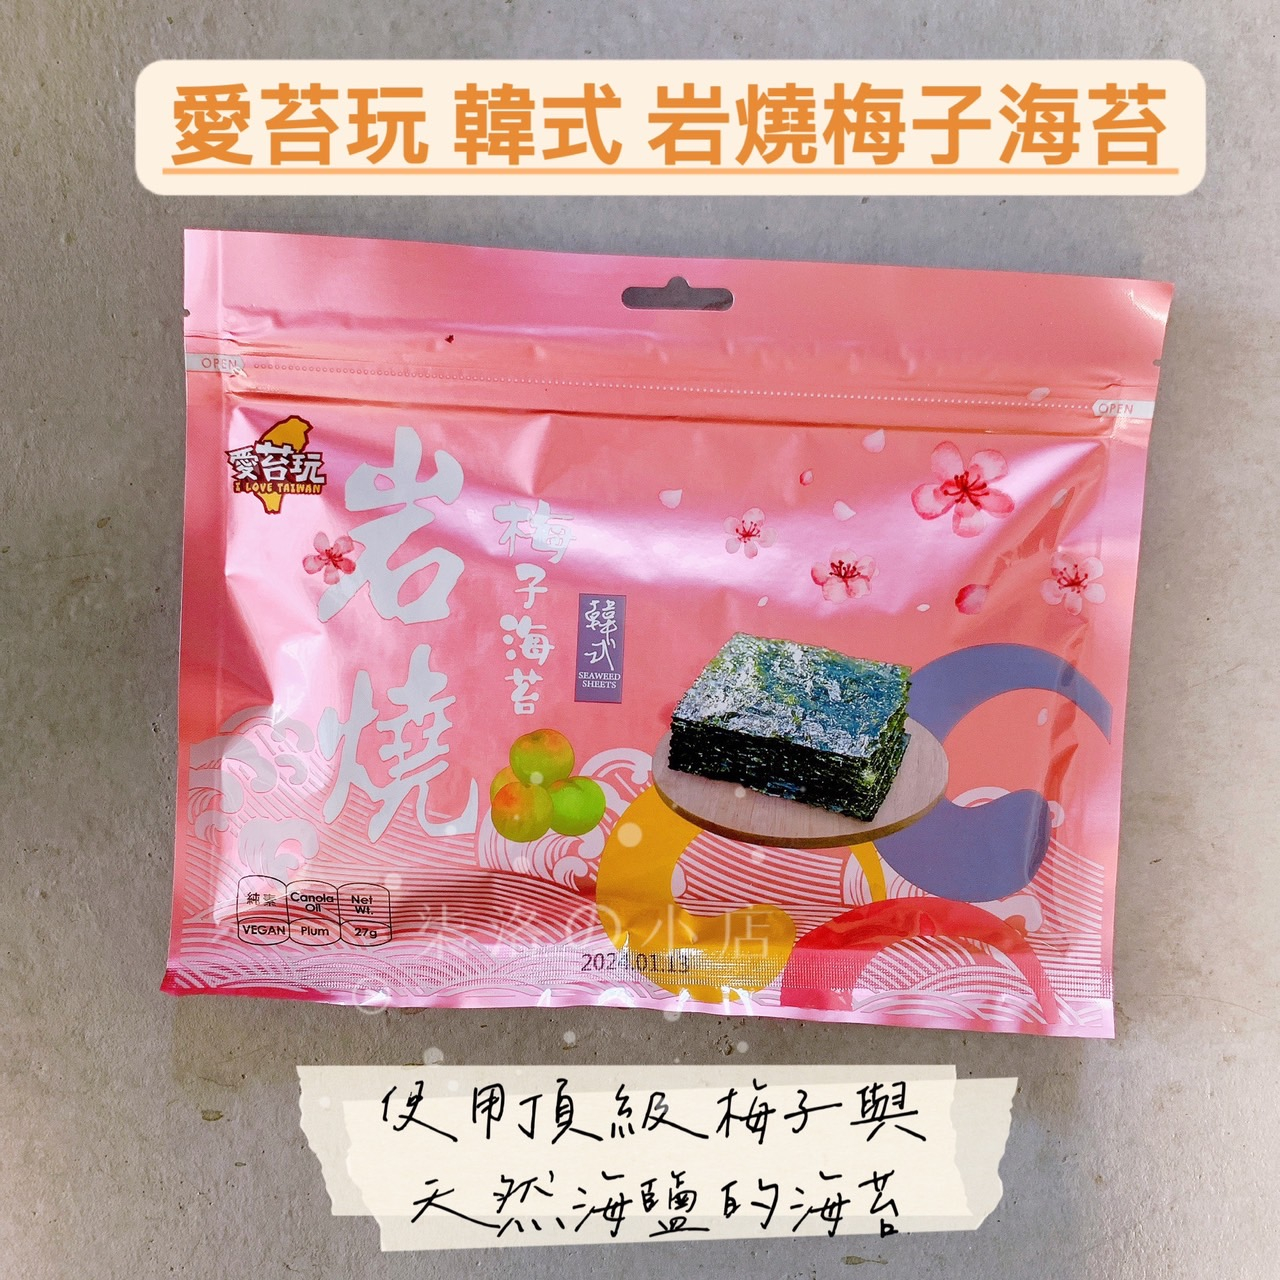 愛苔玩 韓式岩燒海苔 梅子海苔 梅子口味 27g/包 ☆ 柒洛の小店 ☆